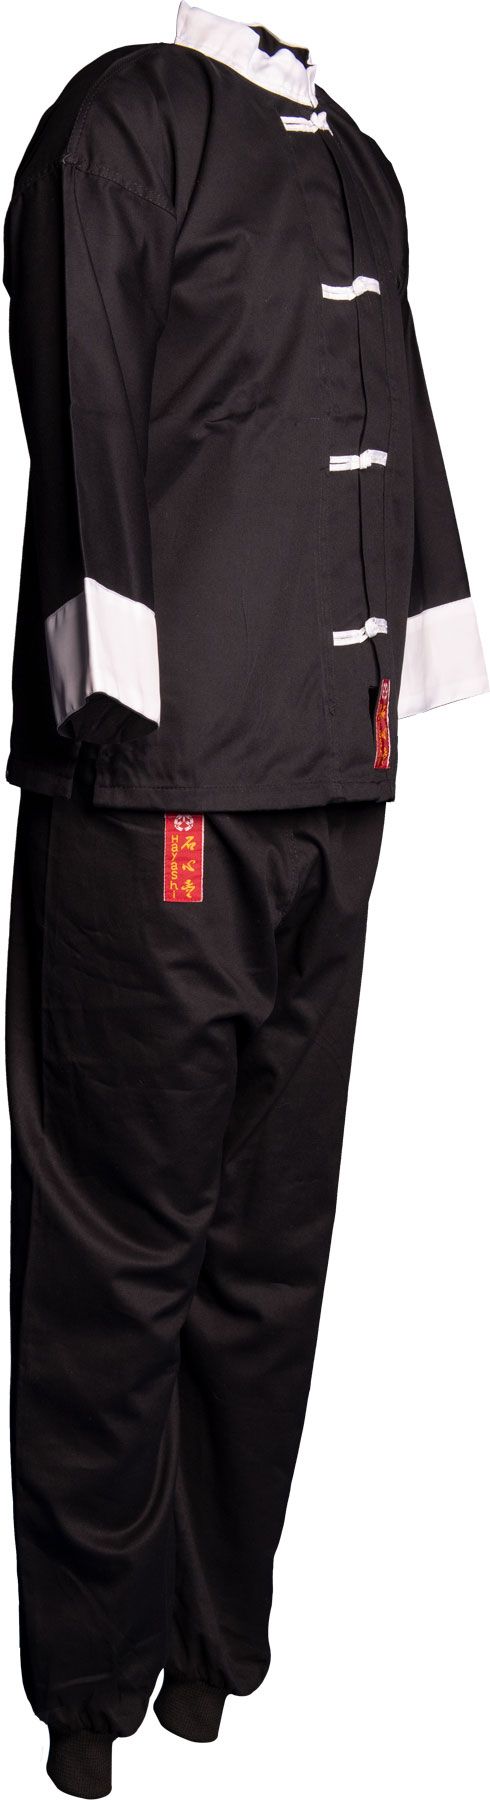 Hayashi Kung-fu oblek - černá, 123